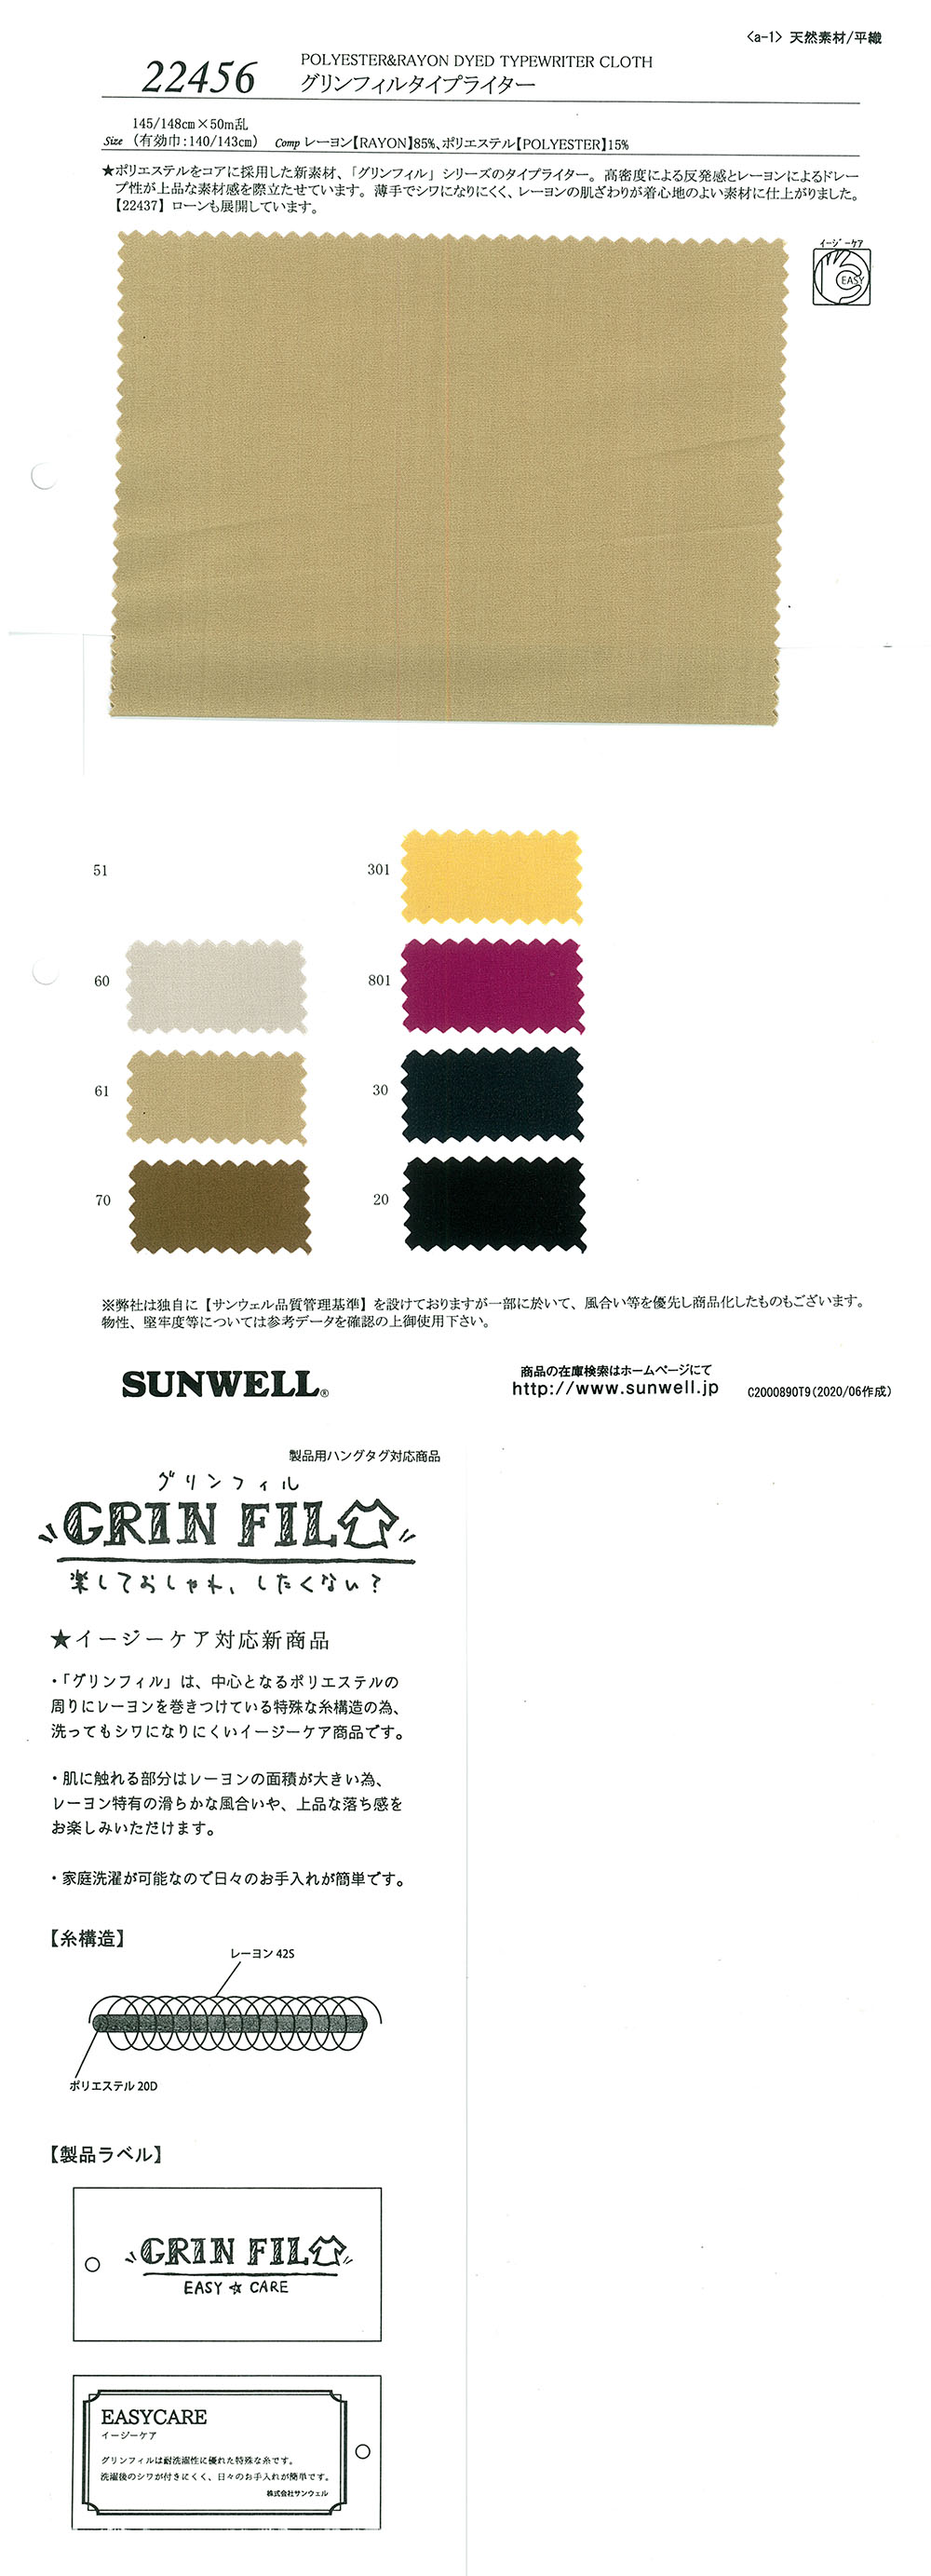 22456 GrinFil Schreibmaschinentuch[Textilgewebe] SUNWELL